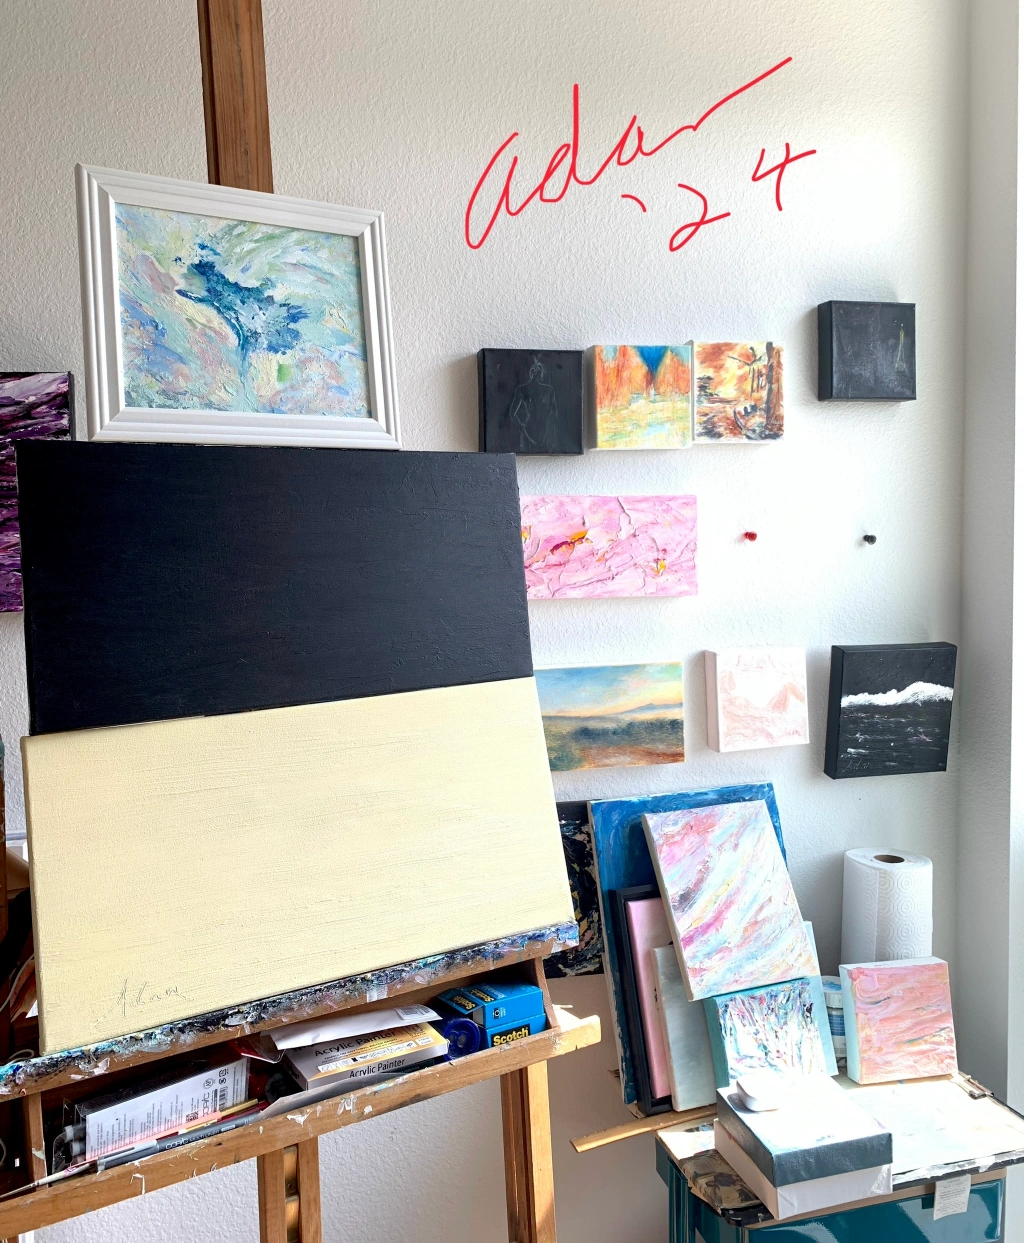 Adan's home studio 03.03.24